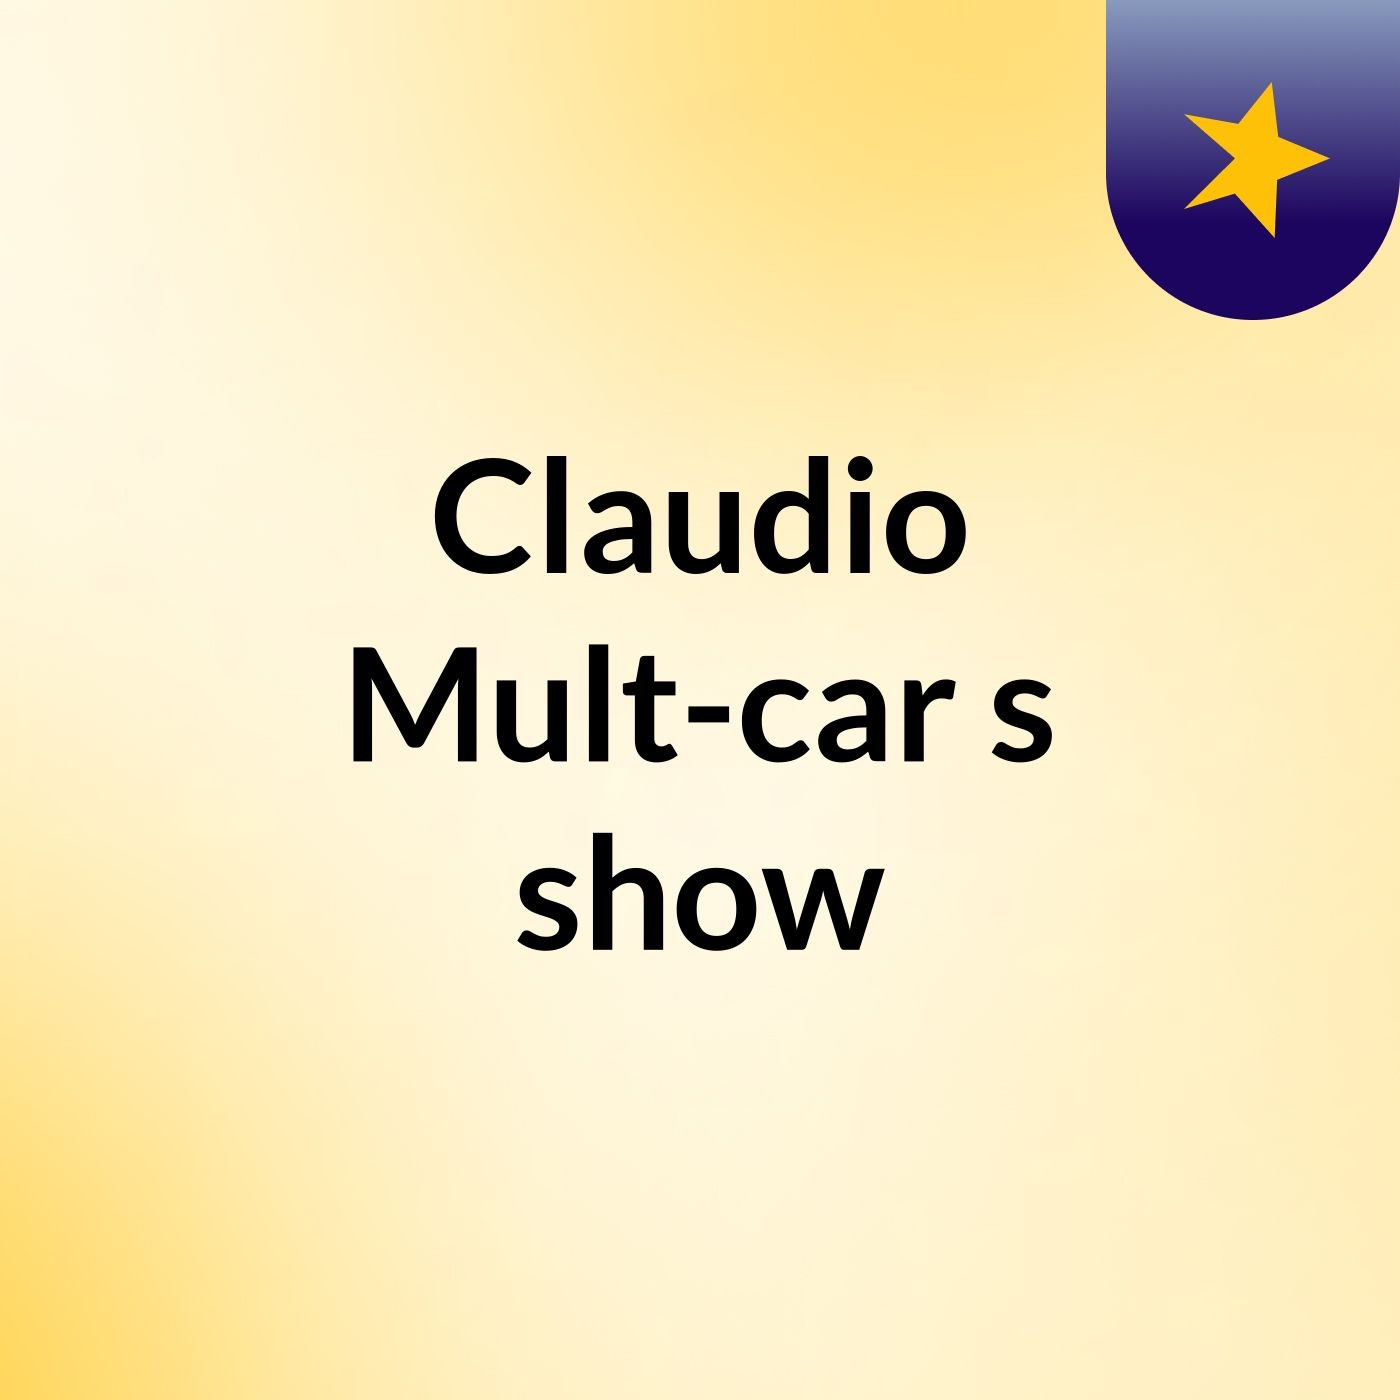 Claudio Mult-car's show